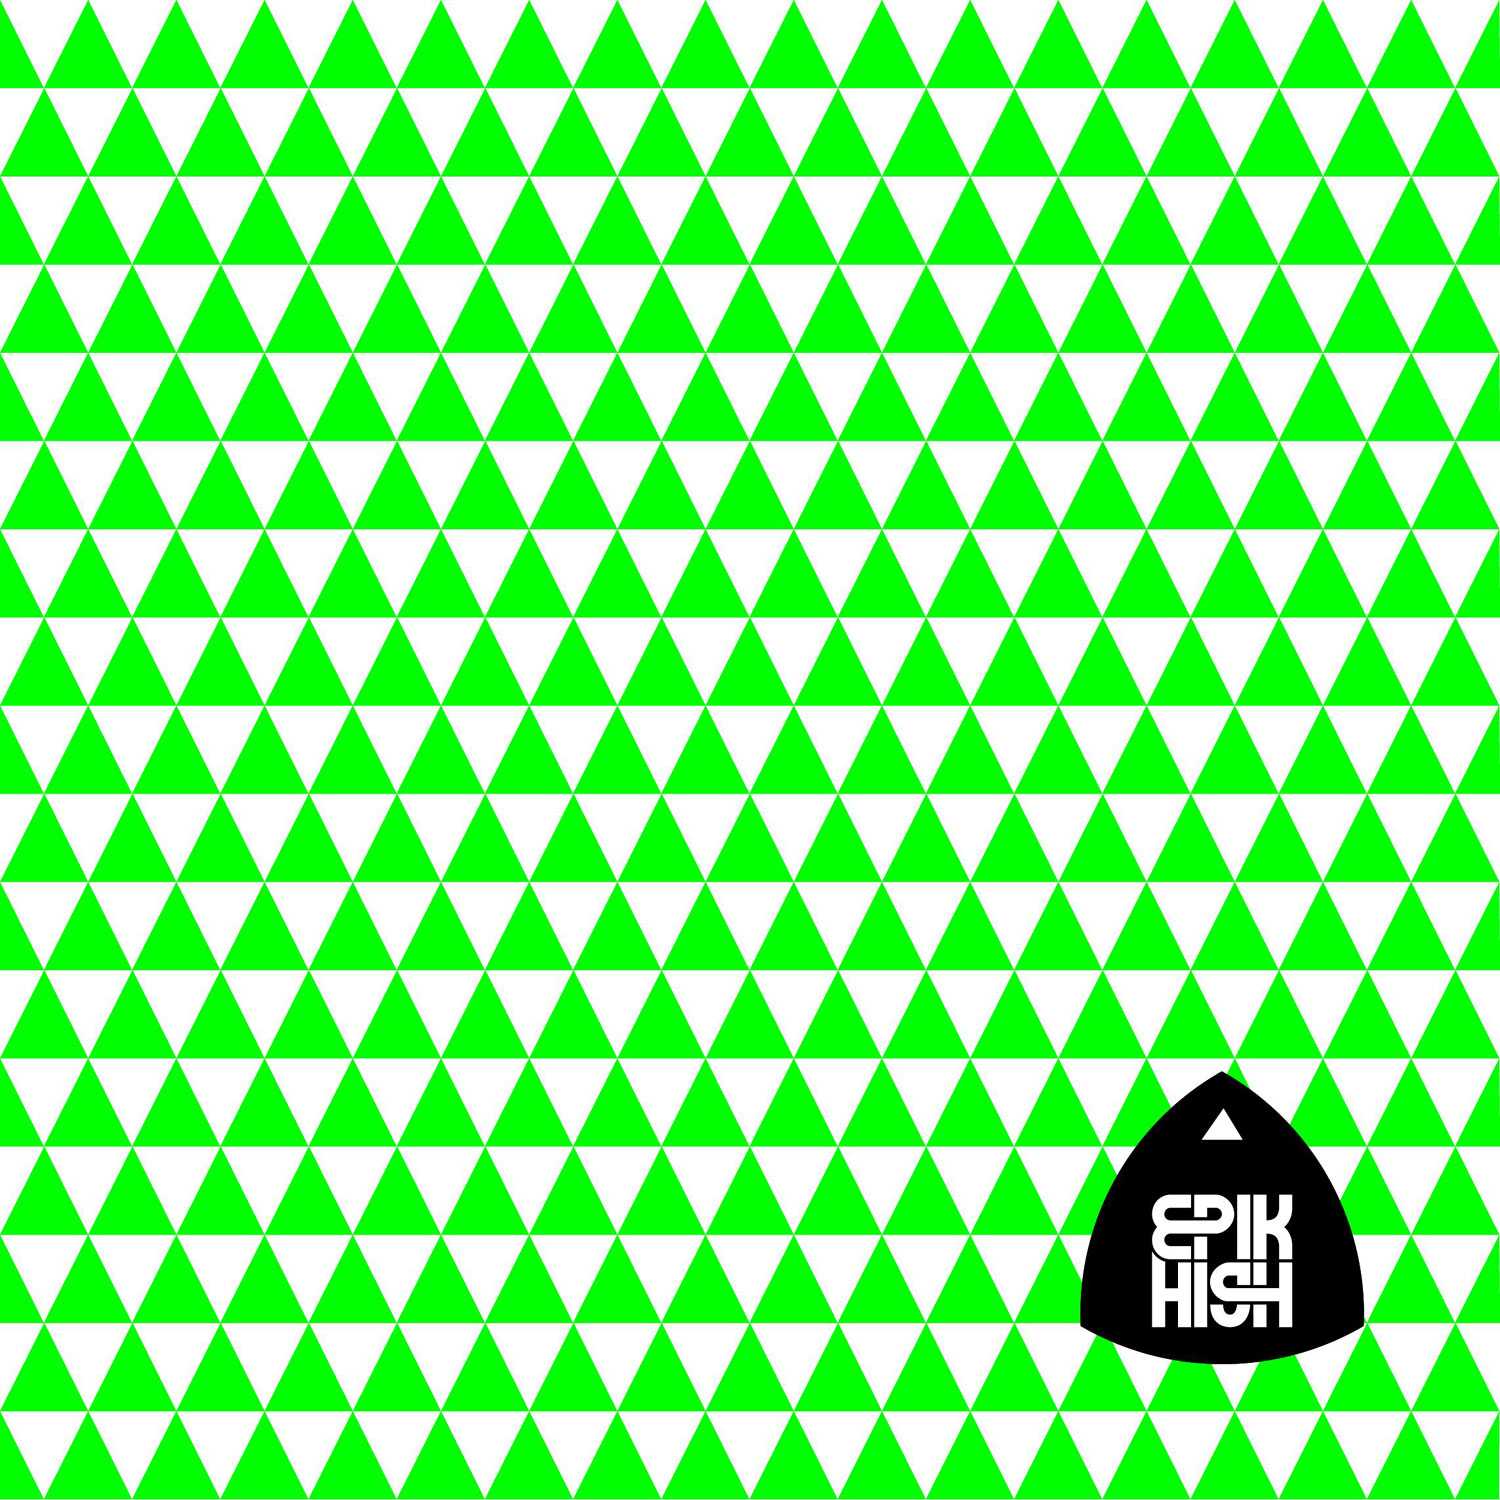 [Album] Epik High - 99 [VOL. 7]